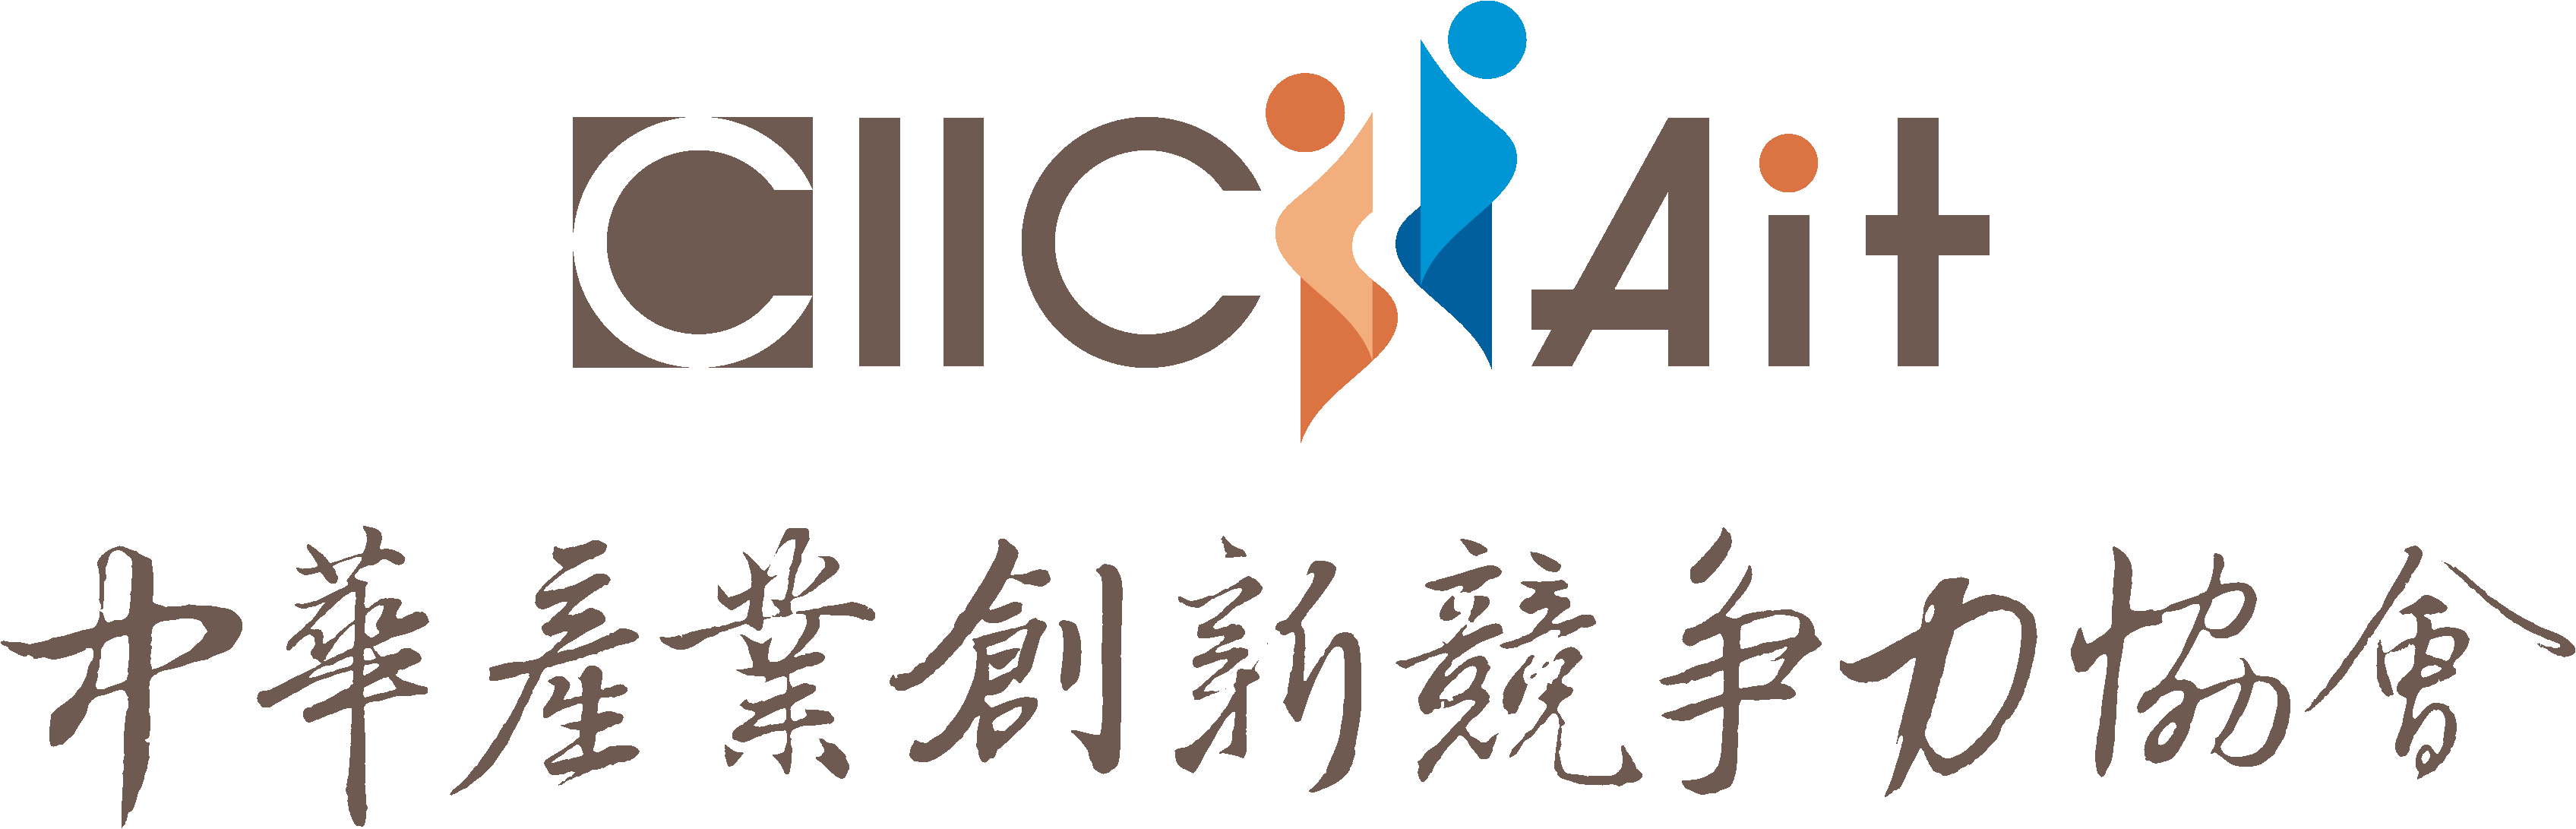 中華產業創新競爭力協會Logo